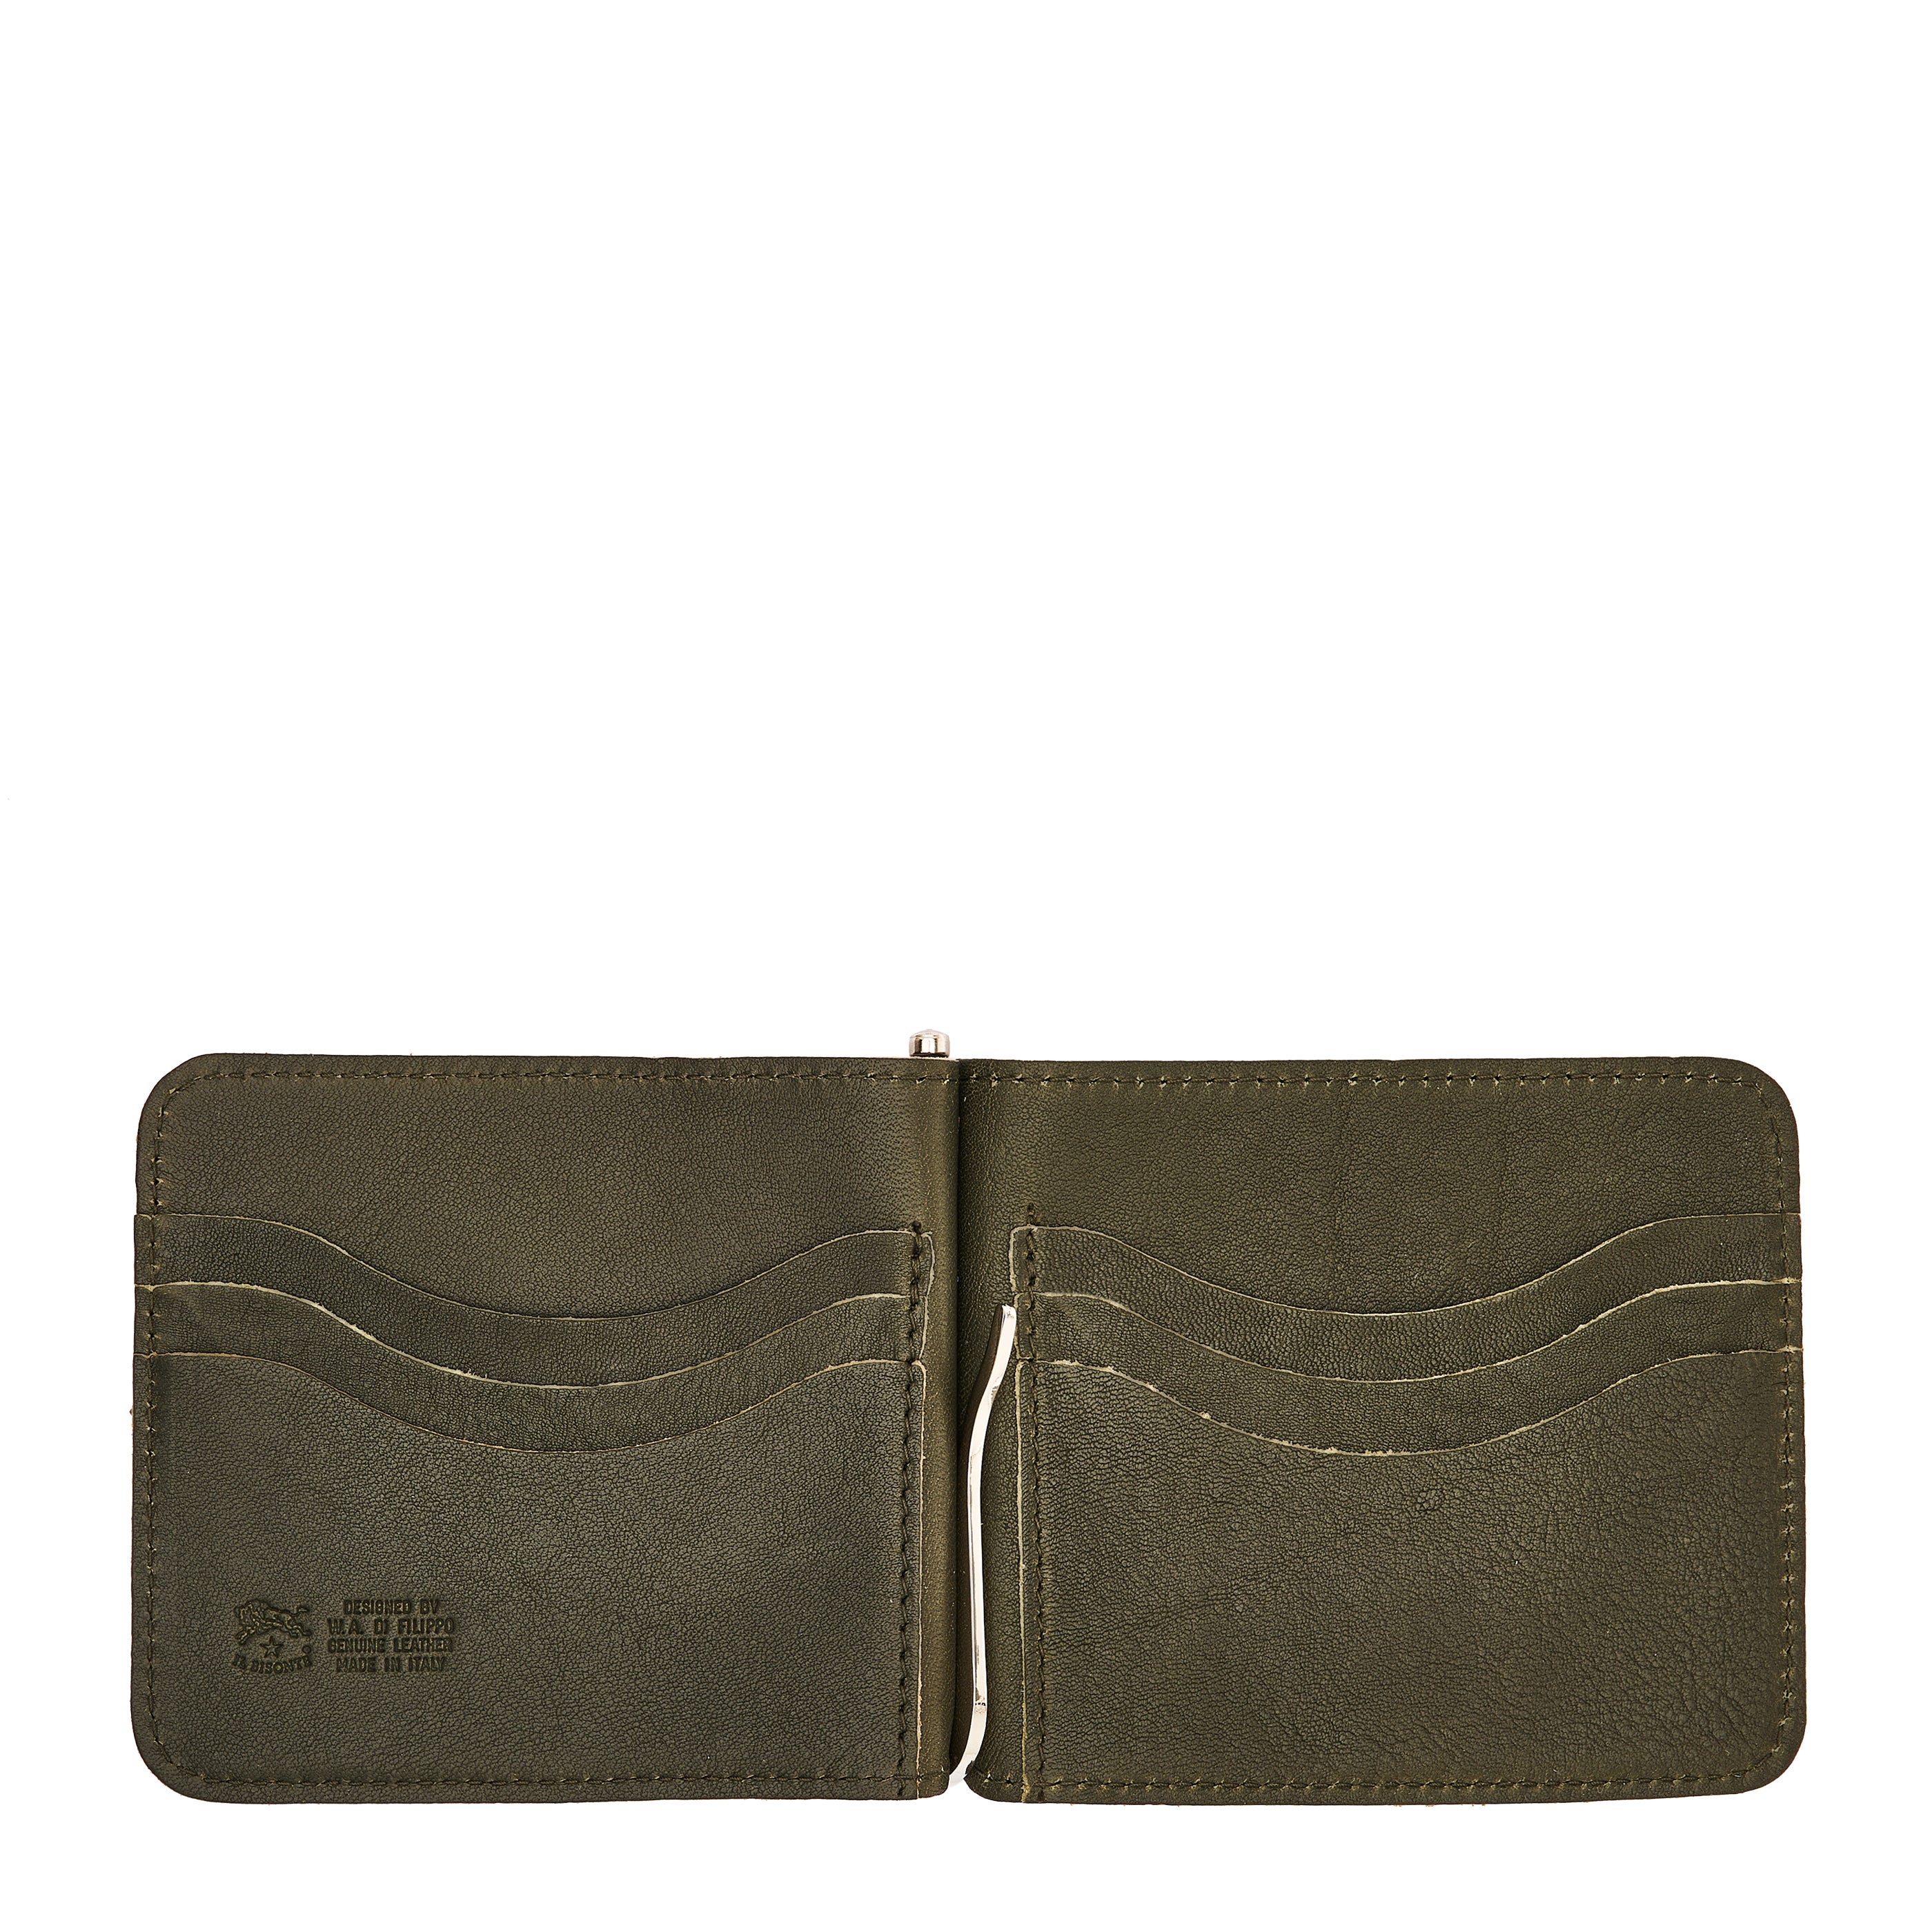 Men's wallet in vintage leather color forest